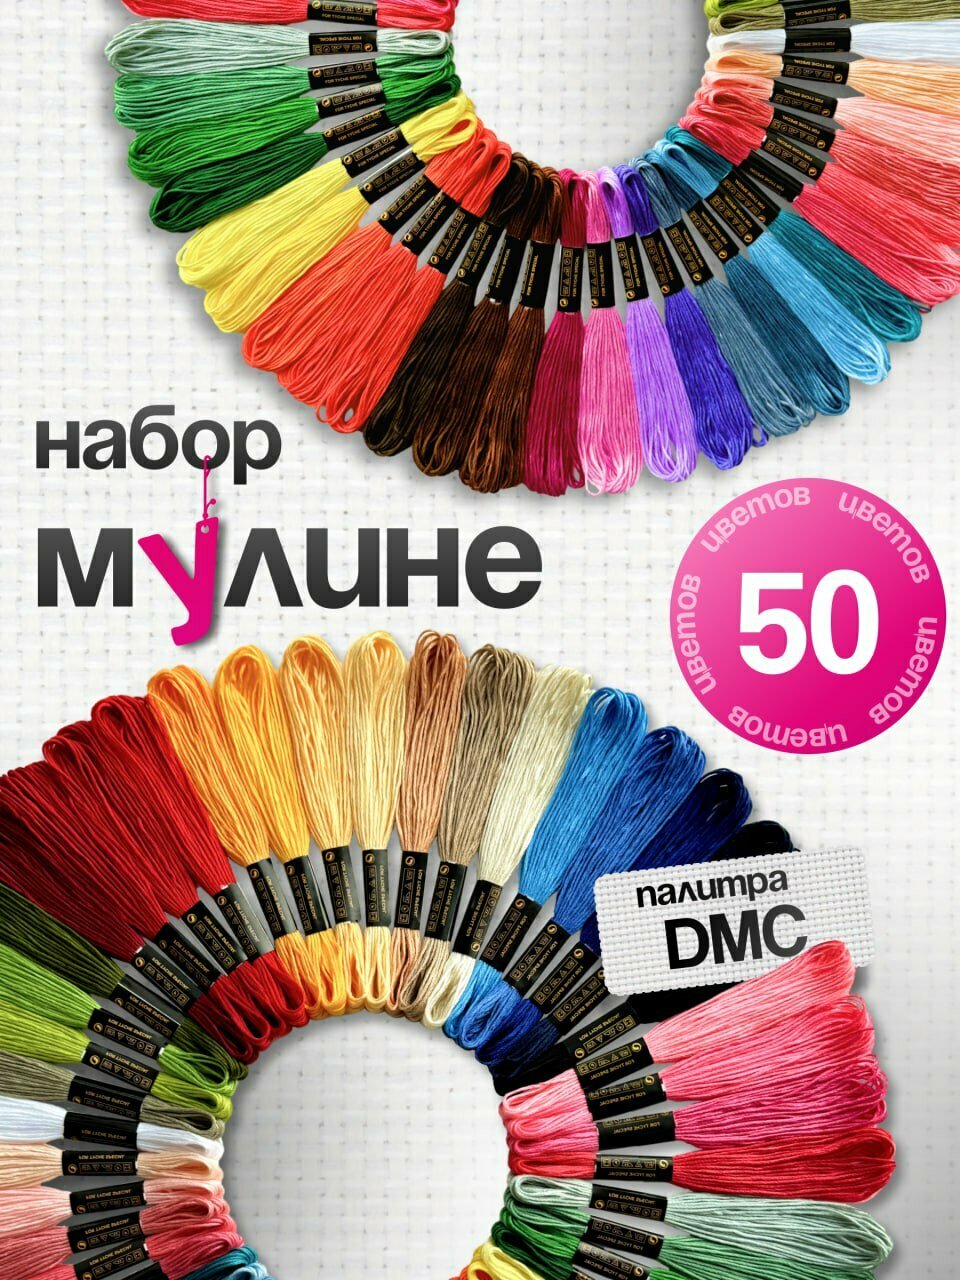 Мулине, нитки для вышивания, СХС, набор 50 разных цветов по 8 м, для творчества и рукоделия, для девочек